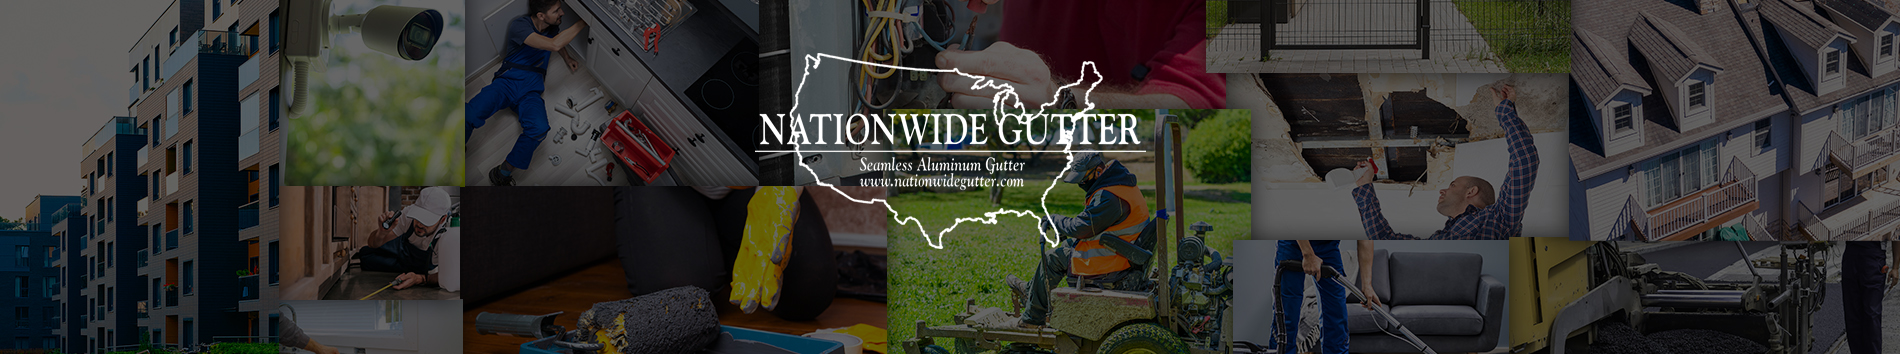 Nationwide Gutter LLC